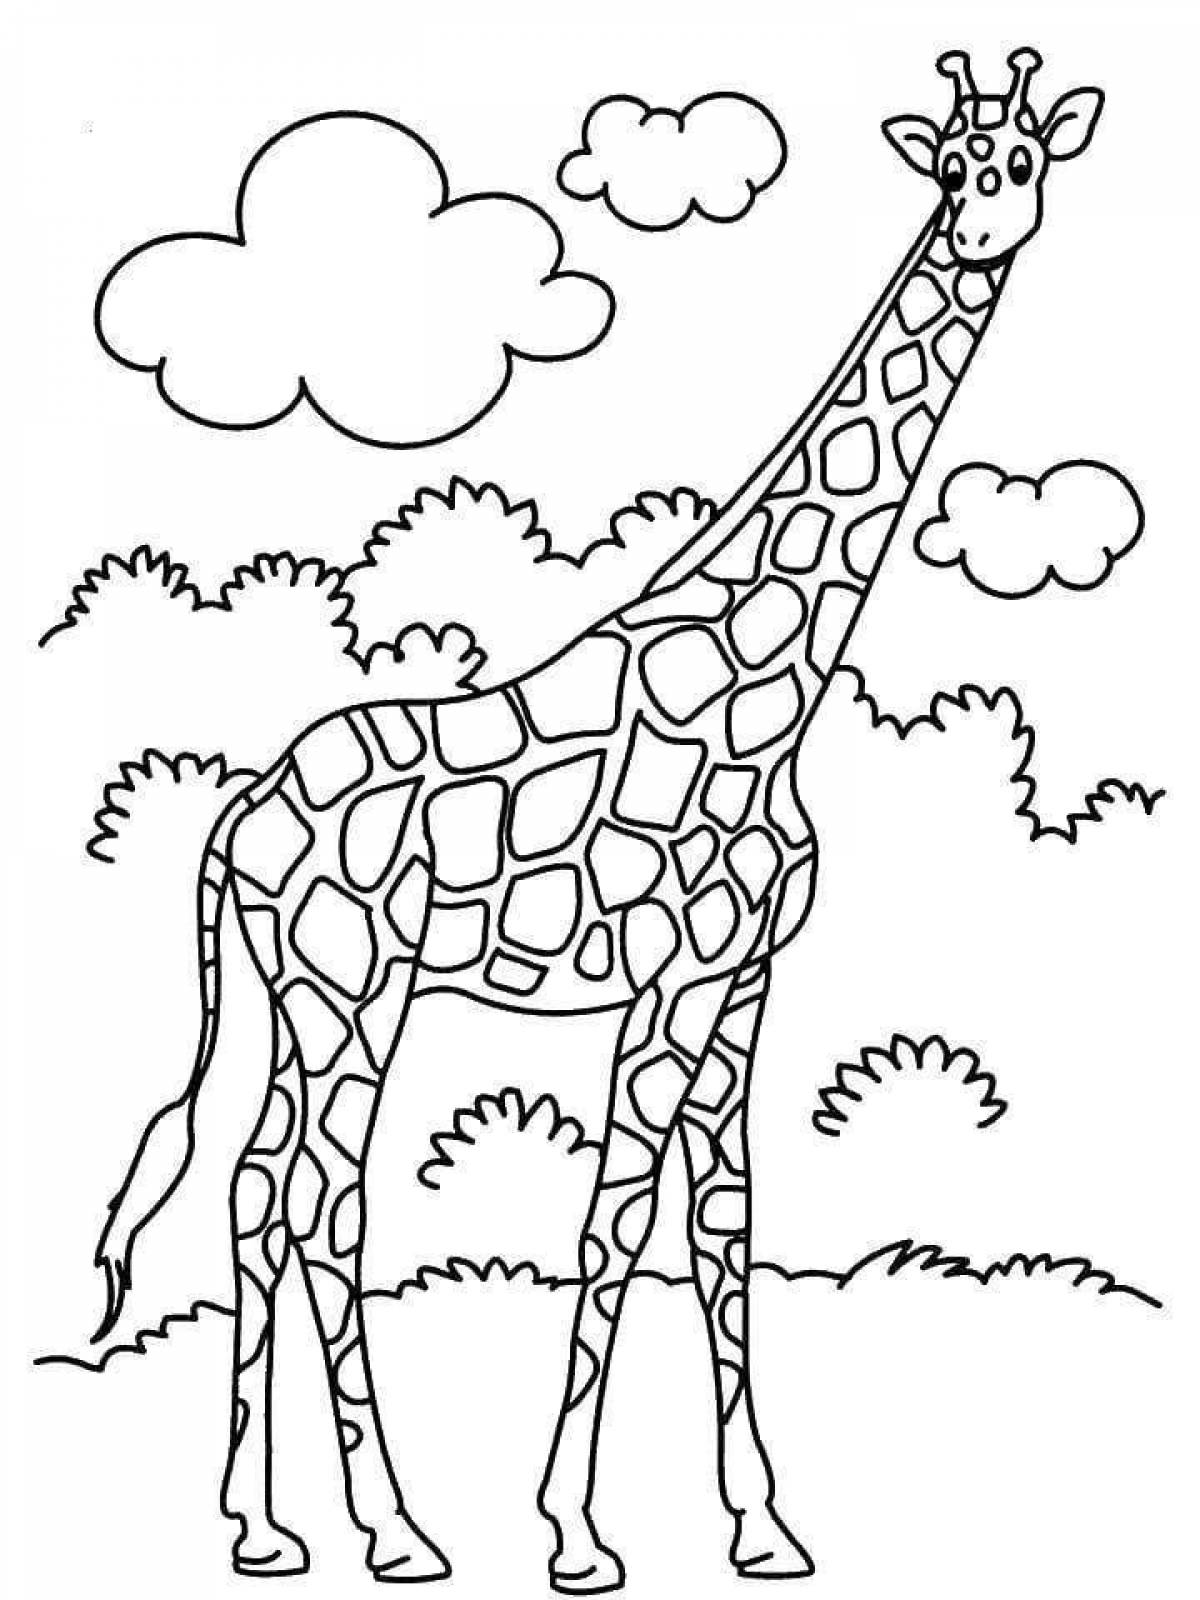 Выдающаяся раскраска жирафа для детей 3-4 лет